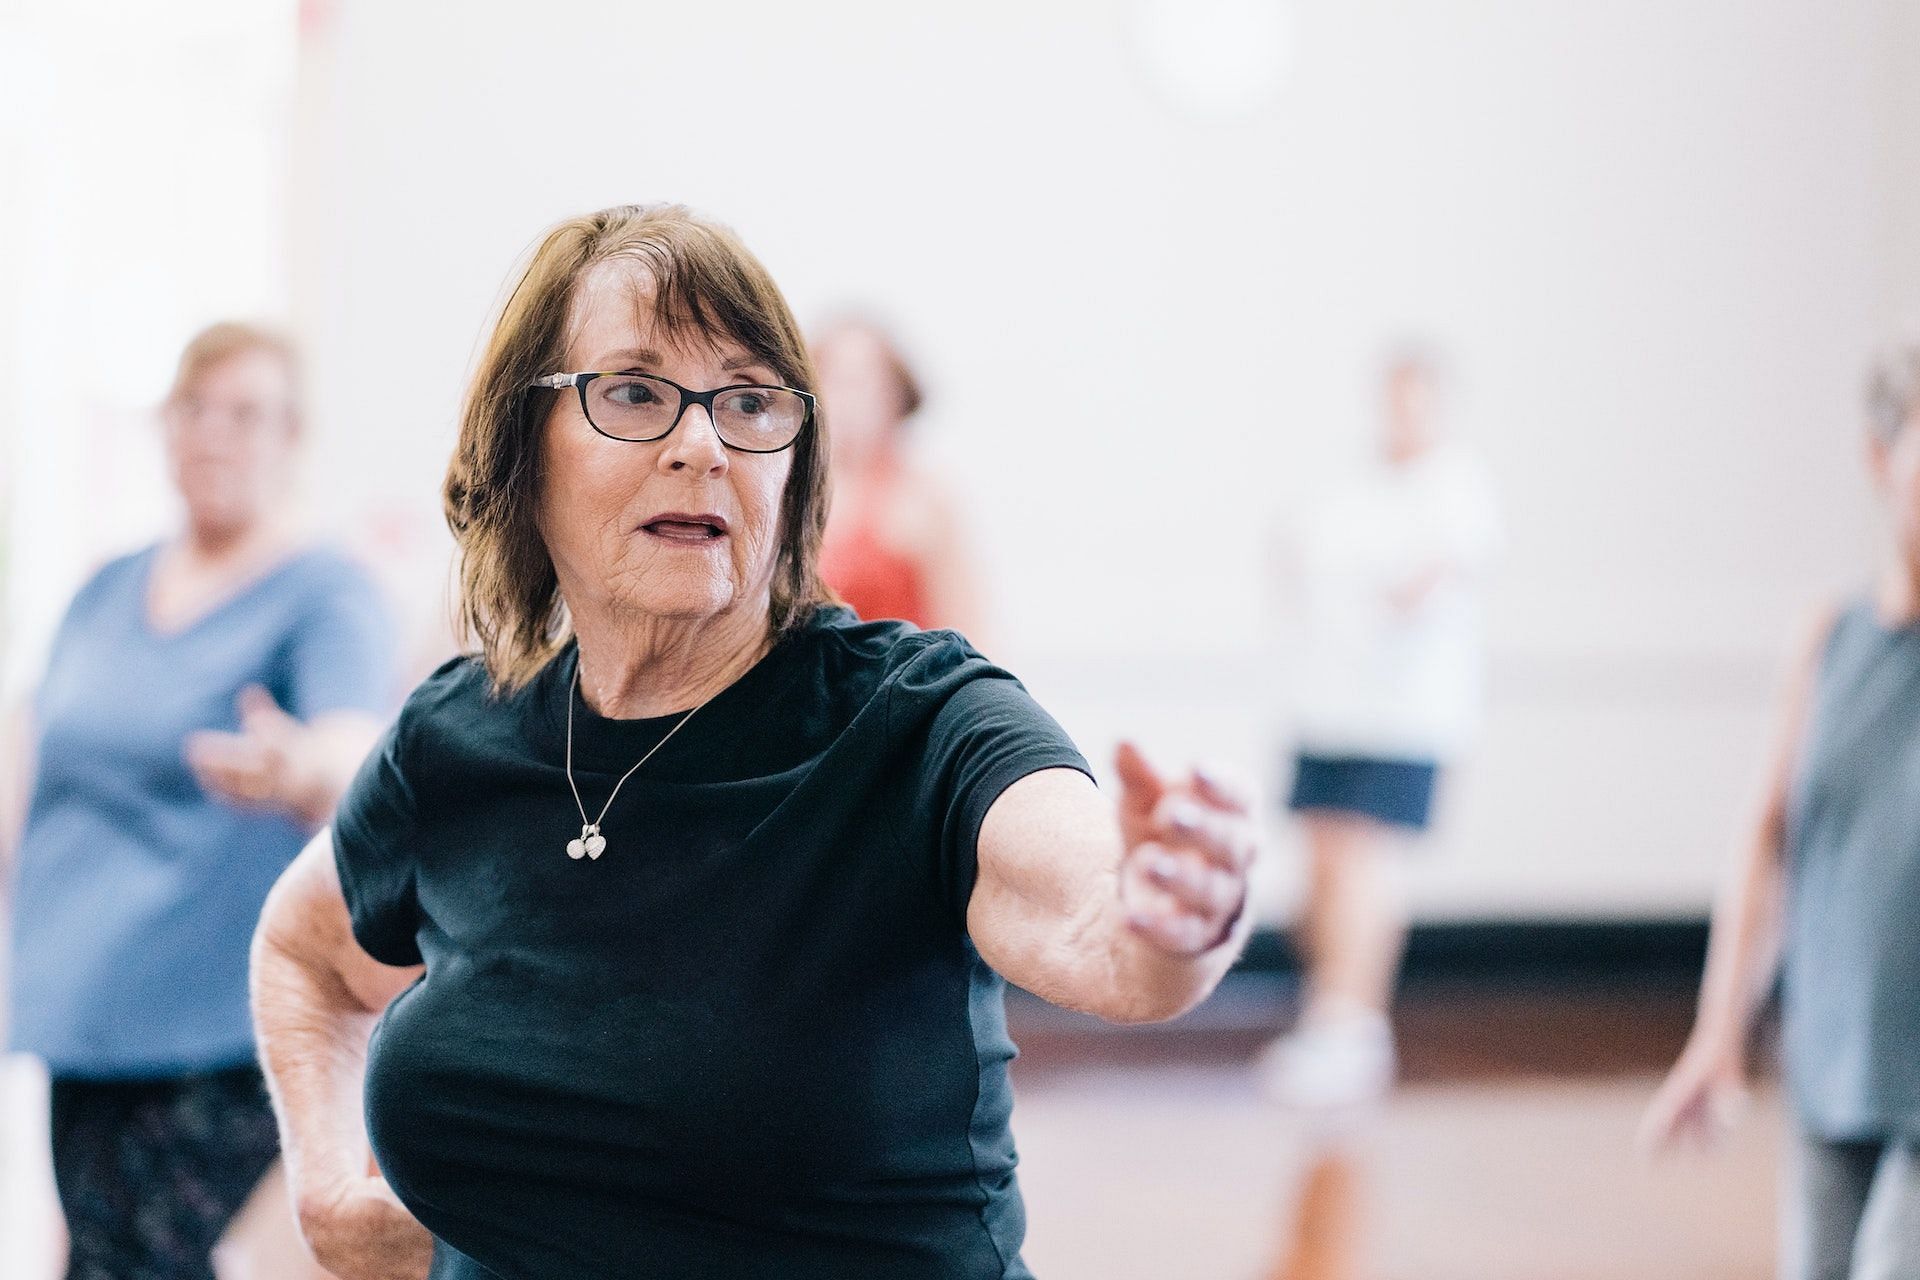 exercise for seniors over 75: Exercise for seniors over 75: 7